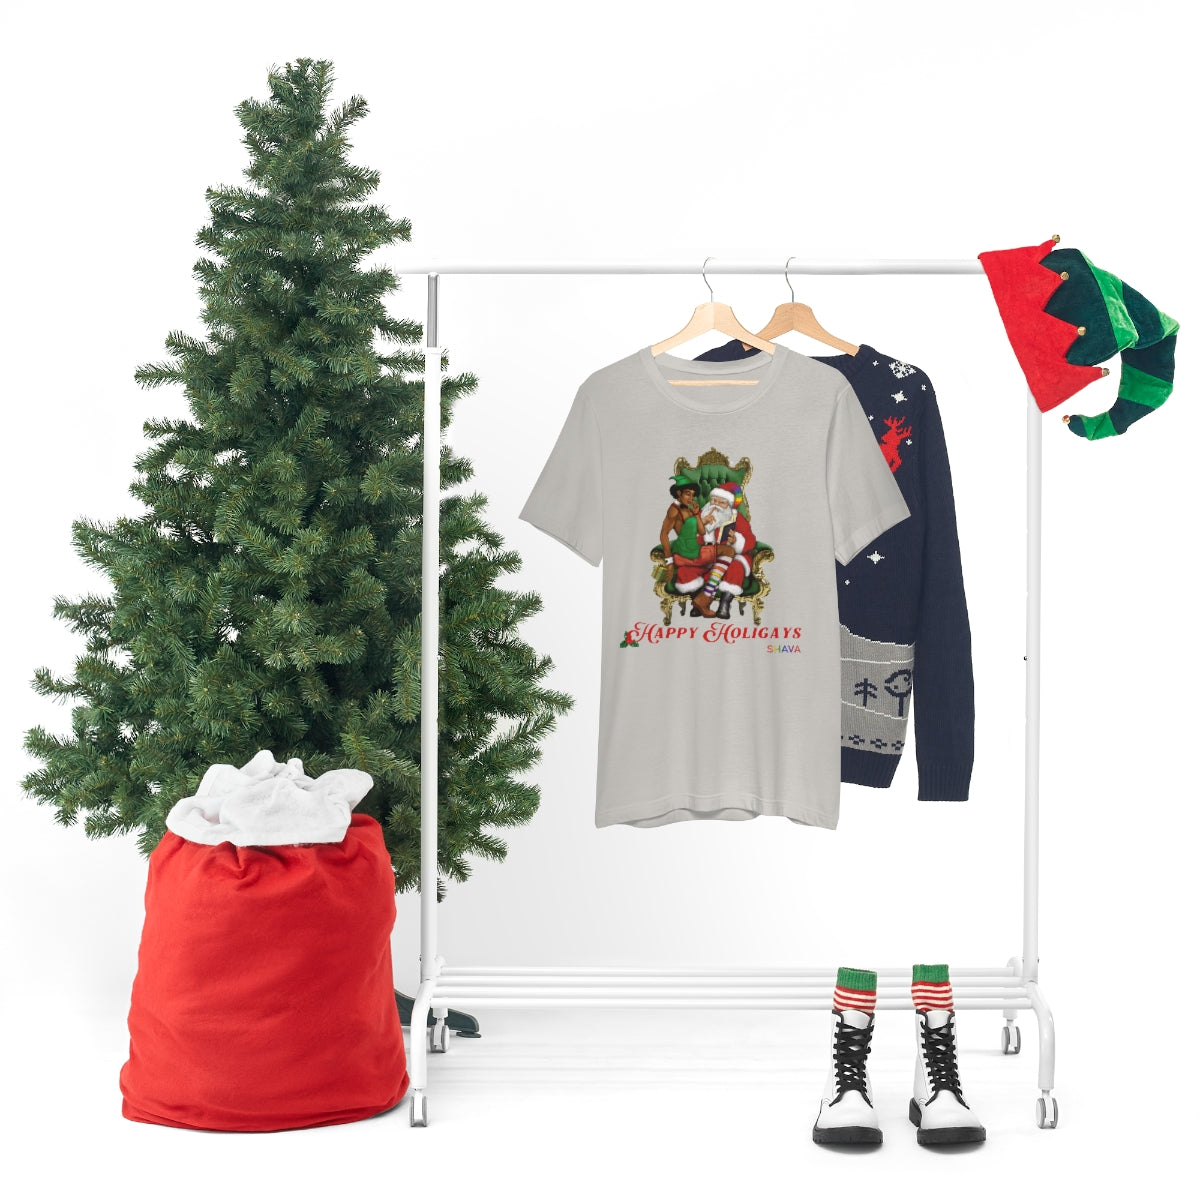 Classic Unisex Christmas LGBTQ Holigays T-Shirt - Holigay (Black) Printify